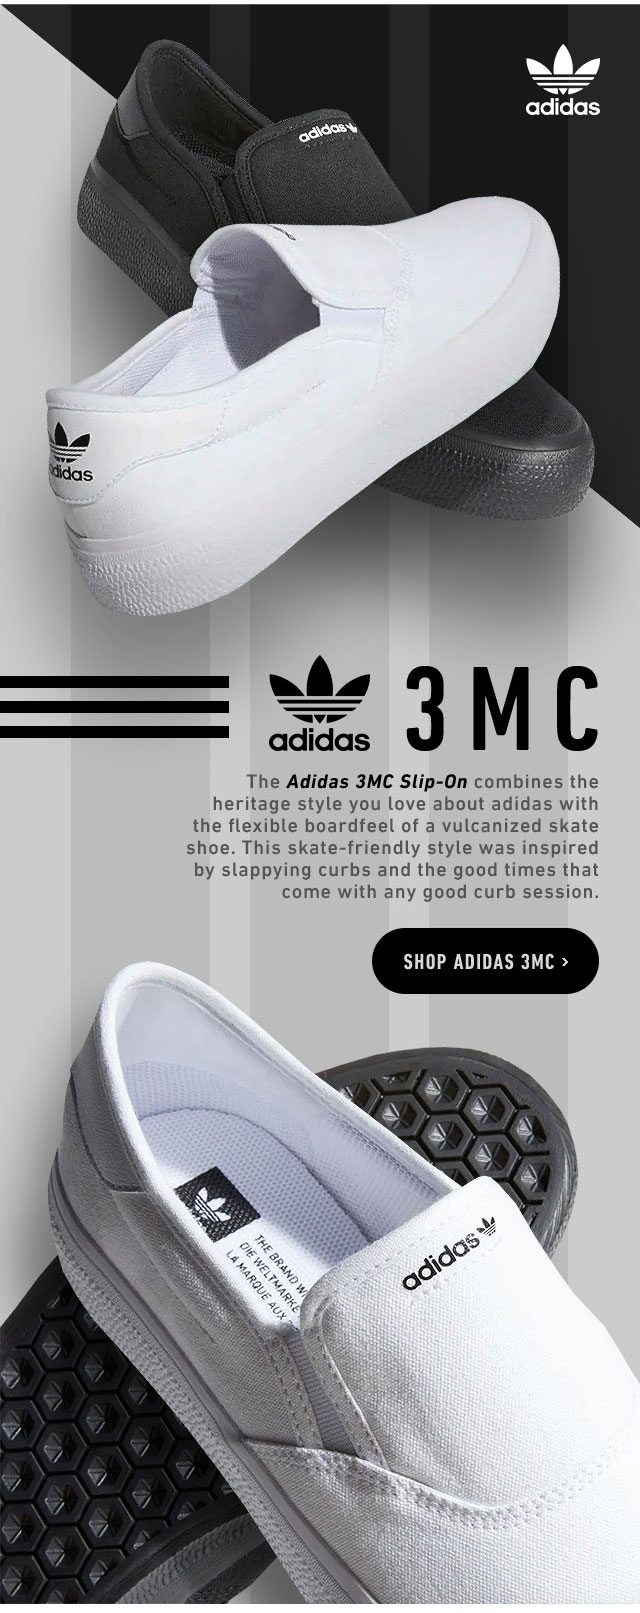 adidas 3mc slip on